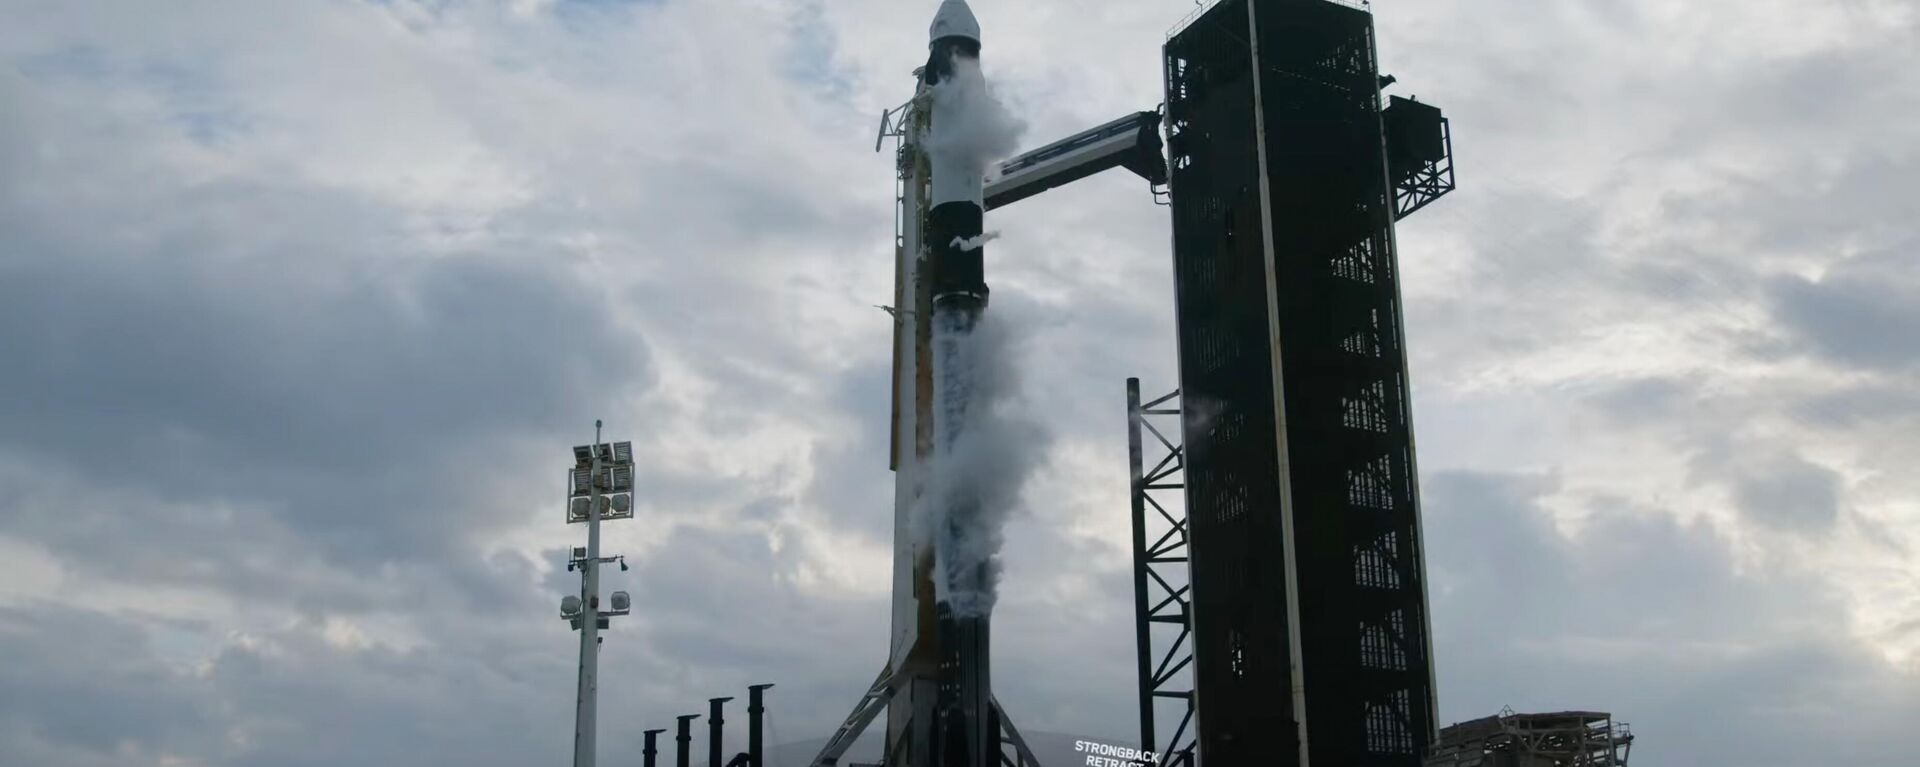 SpaceX Falcon 9 roketi ile fırlatılacak olan Dragon kapsülü, ABD’nin Florida eyaletinde bulunan Kennedy Uzay Merkezi'nden Uluslararası Uzay İstasyonu'na doğru yola çıkacak. Türkiye'nin ilk uzay yolcusu Alper Gezeravcı’nın uzay seferini yapacağı Dragon kapsülünü taşıyacak olan Falcon 9 roketi, fırlatmadan önce Florida'da bulunan Kennedy Uzay Merkezi'nde görüntülendi.  - Sputnik Türkiye, 1920, 19.01.2024